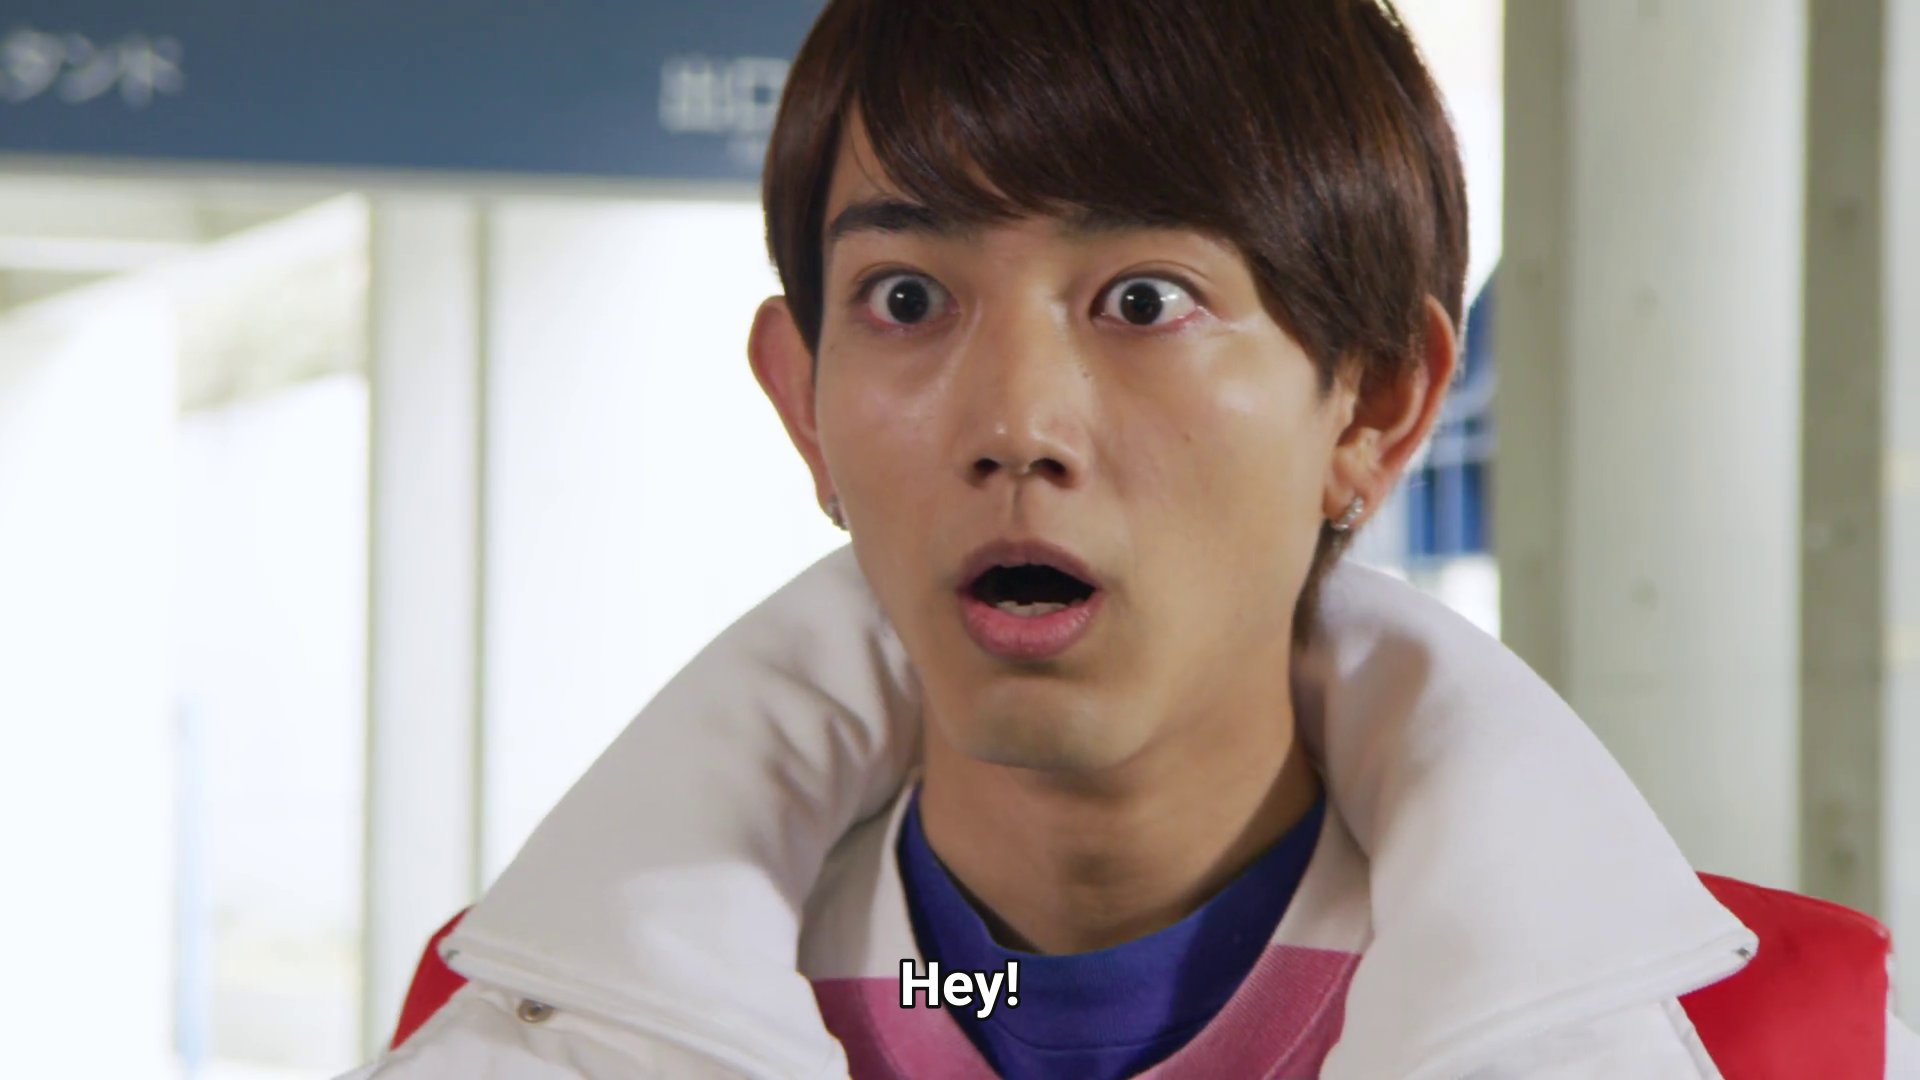 Kaito, shocked: Hey!